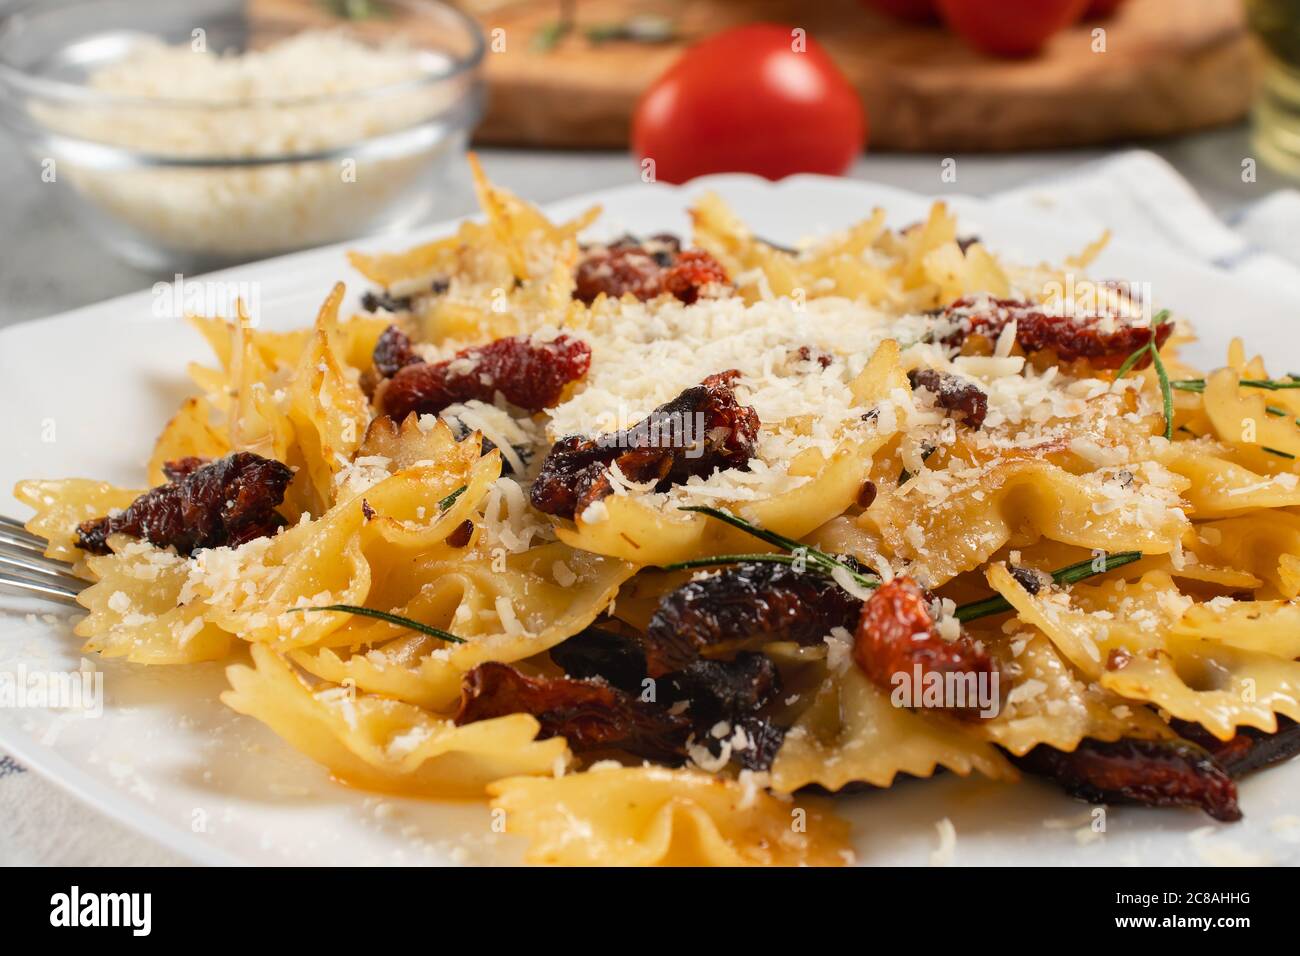 Pâtes avec tomates séchées et parmesan dans une assiette blanche sur la table. Plat italien, gros plan Banque D'Images